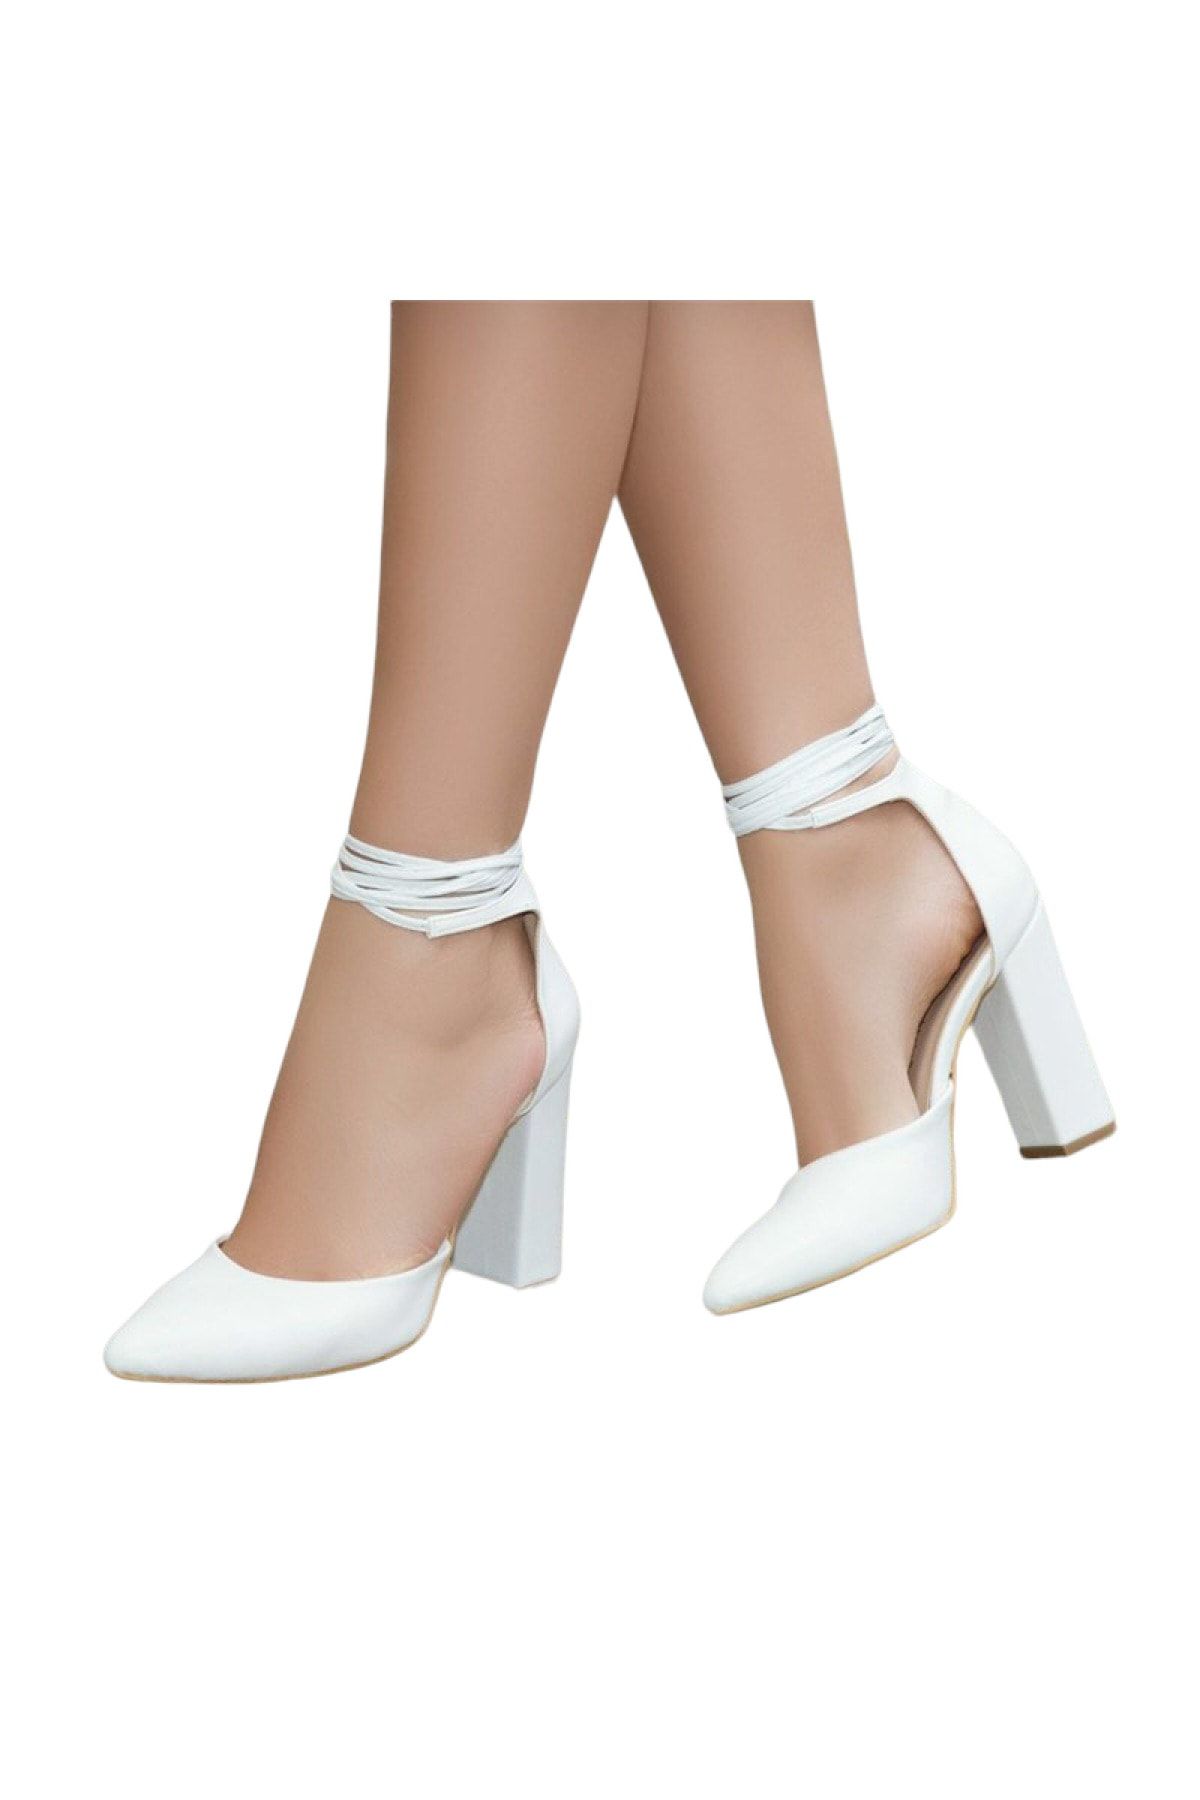 Stella Pendenza Hakiki Deri 9 Cm Bilek Bağlamalı Topuklu Kadın Stiletto Ayakkabı